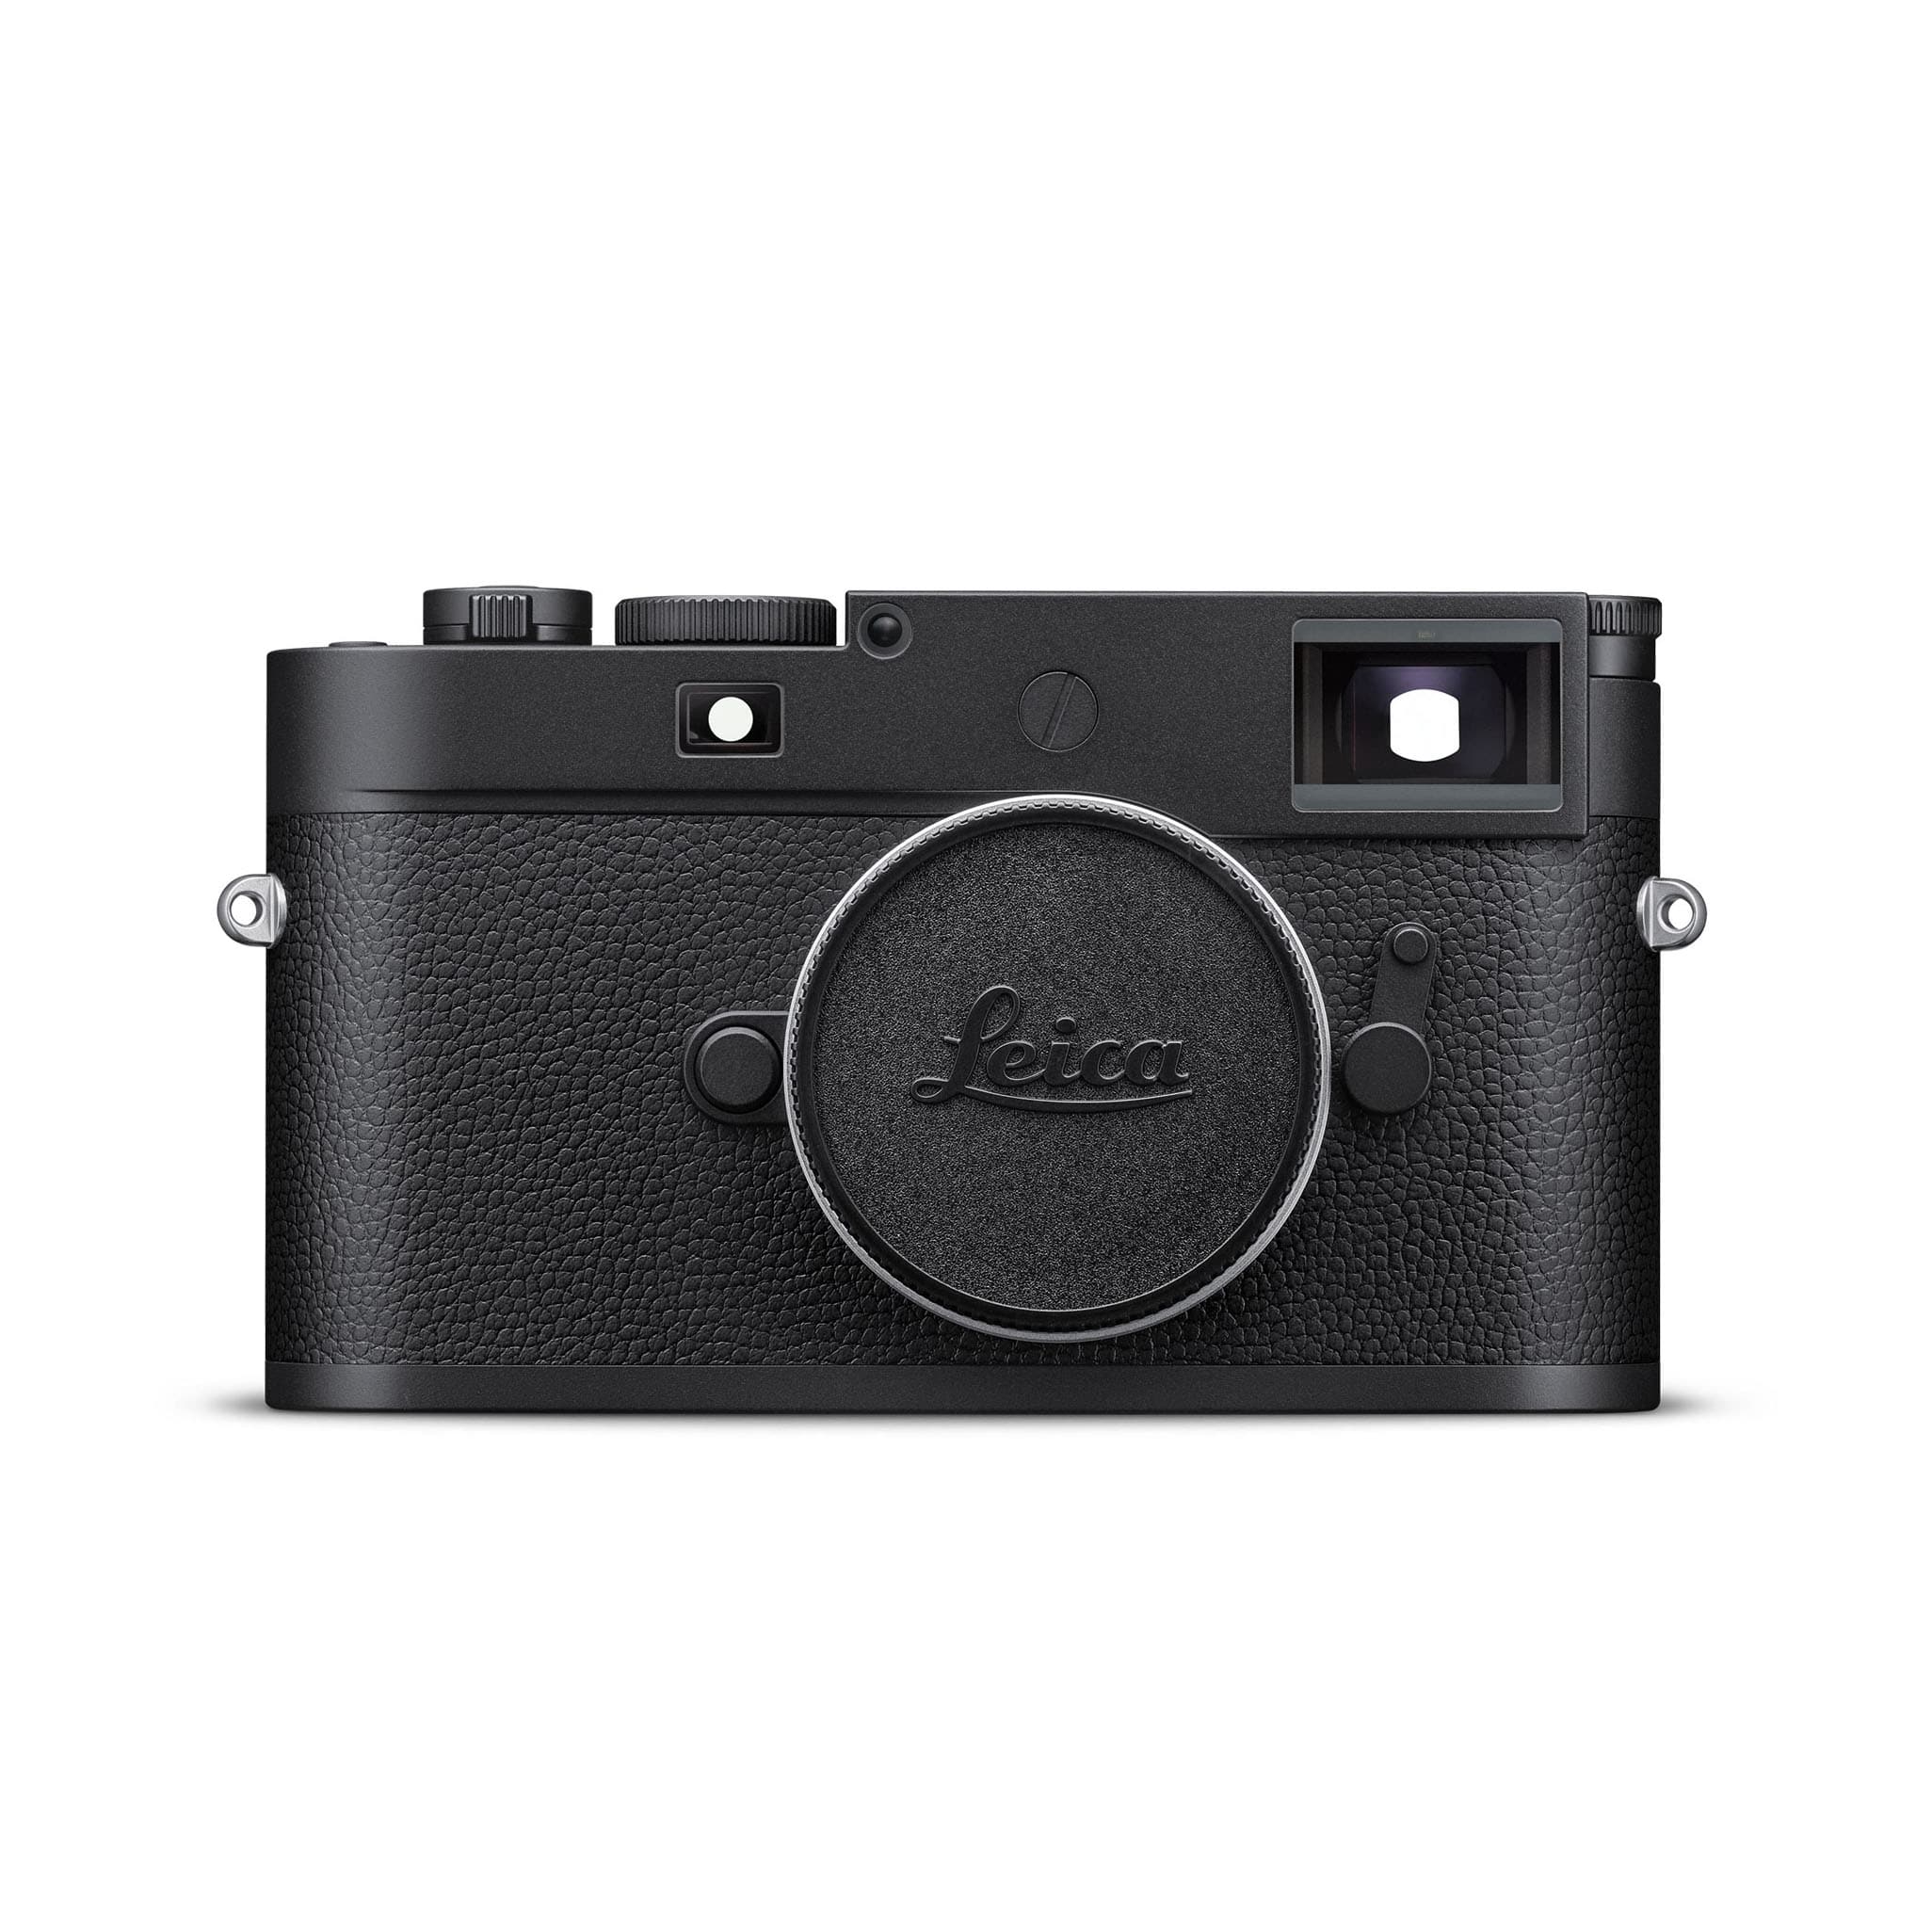 Leica(ライカ) M10用 ハンドグリップ ブラック 24018(ハンドグリップ 